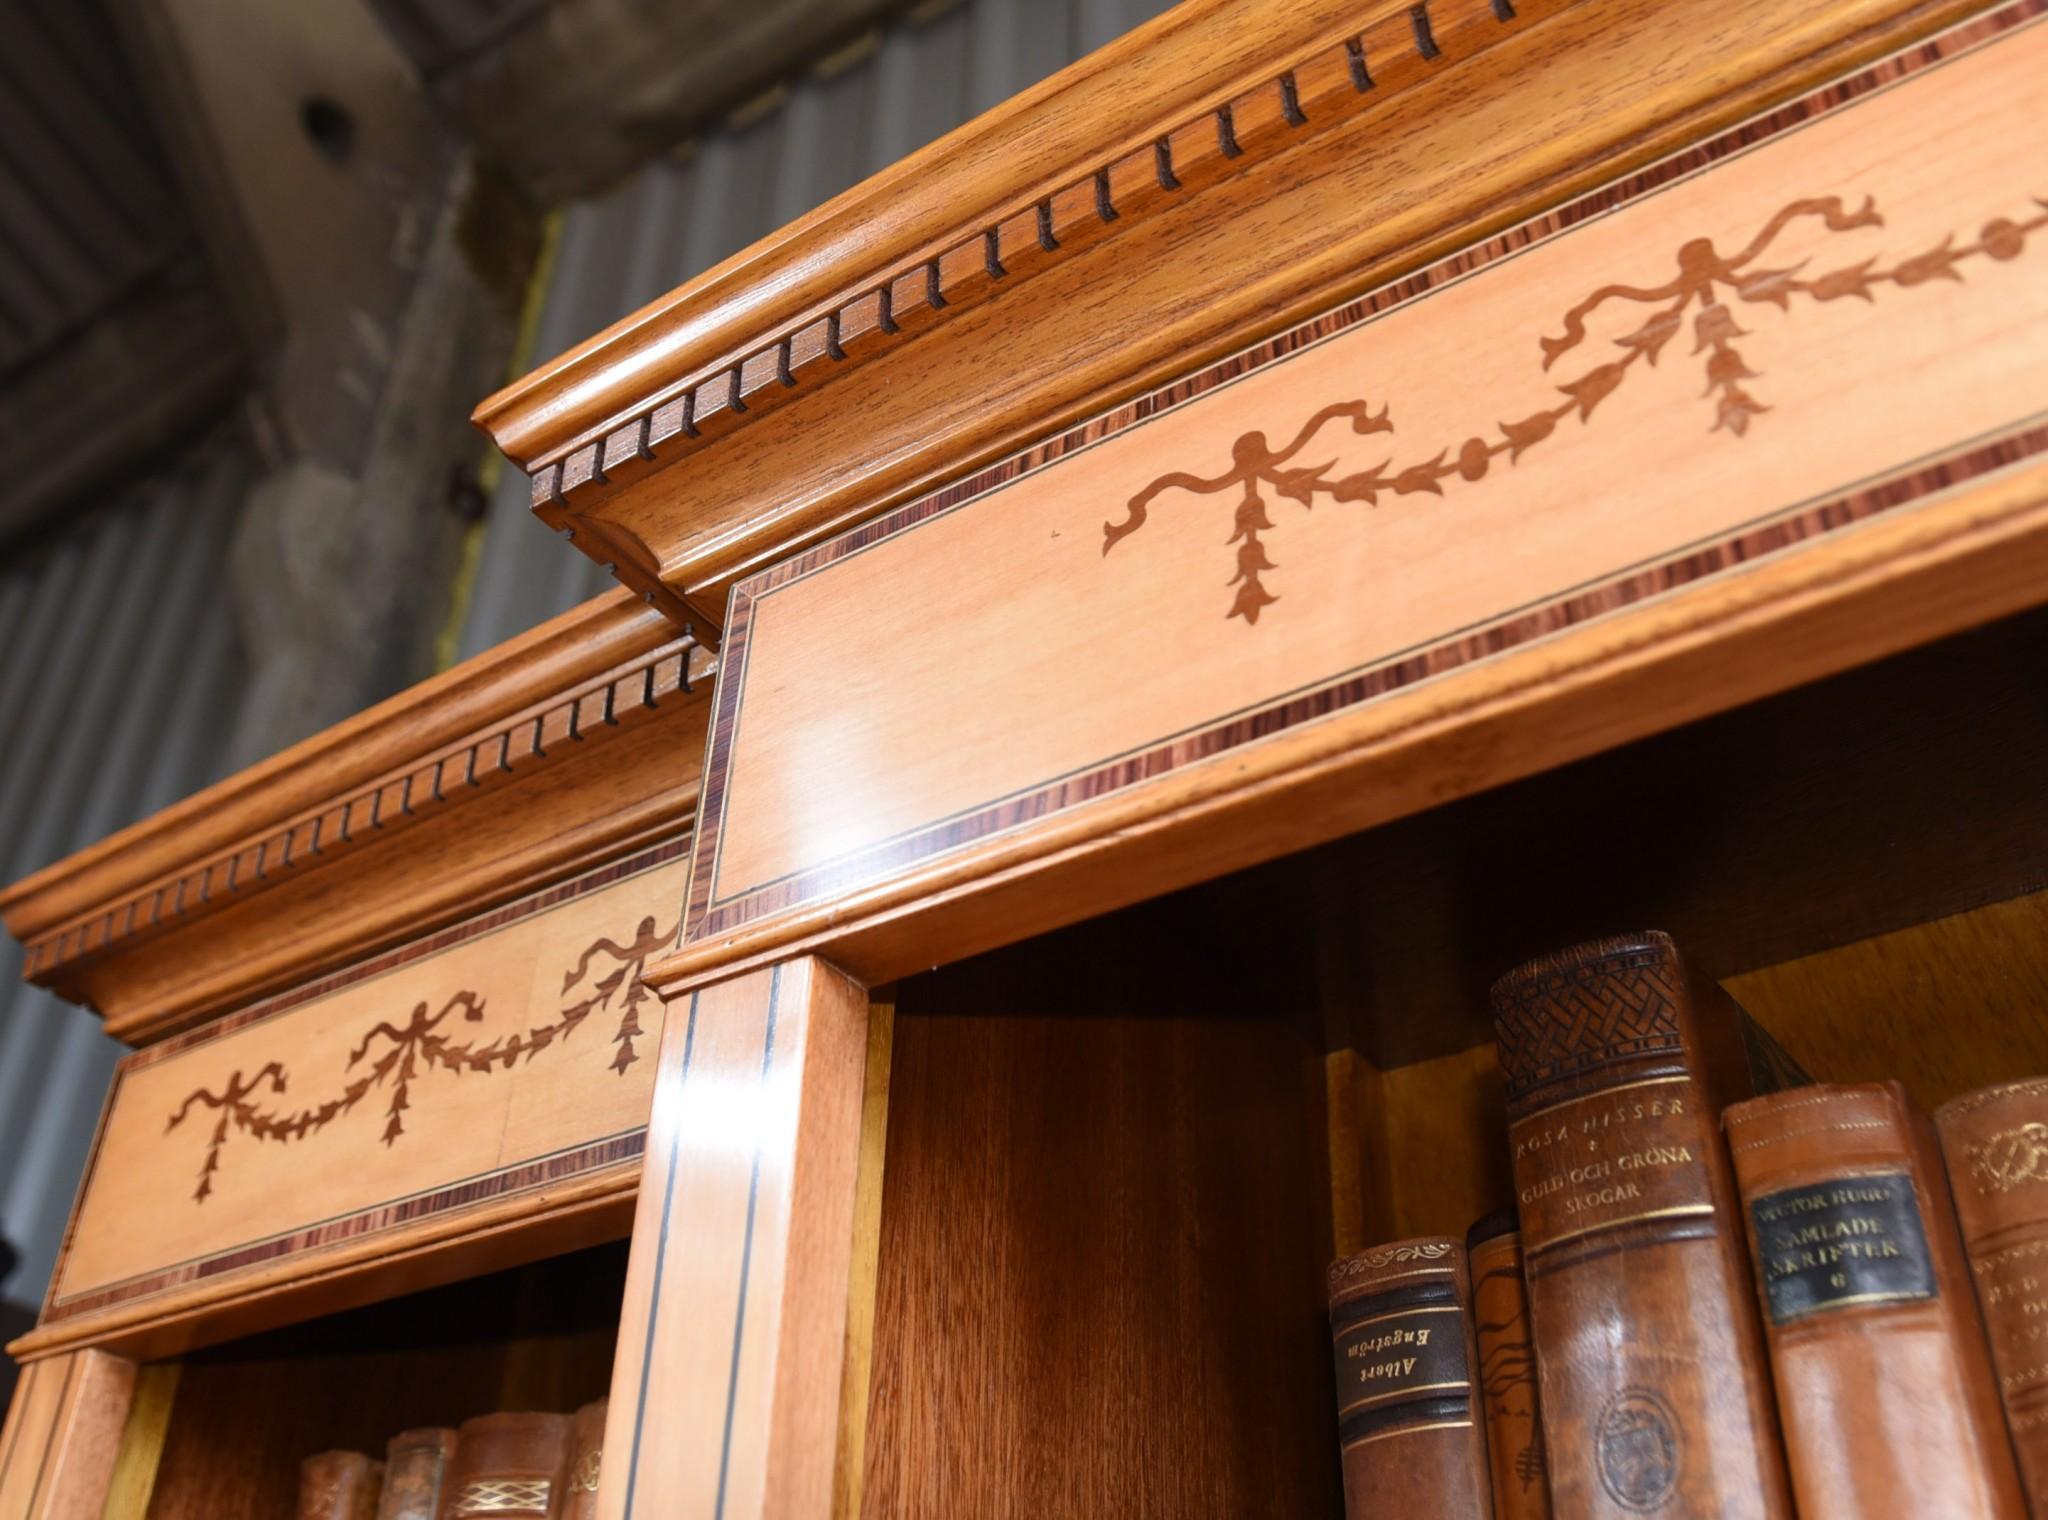 Bücherregal mit offener Front aus Satinholz im Sheraton-Stil
Elegantes und praktisches Stück
Die Einlegeböden sind verstellbar, so dass Sie Bücher und Dekorationsgegenstände unterschiedlicher Größe unterbringen können.
Aufwändige Intarsienarbeit